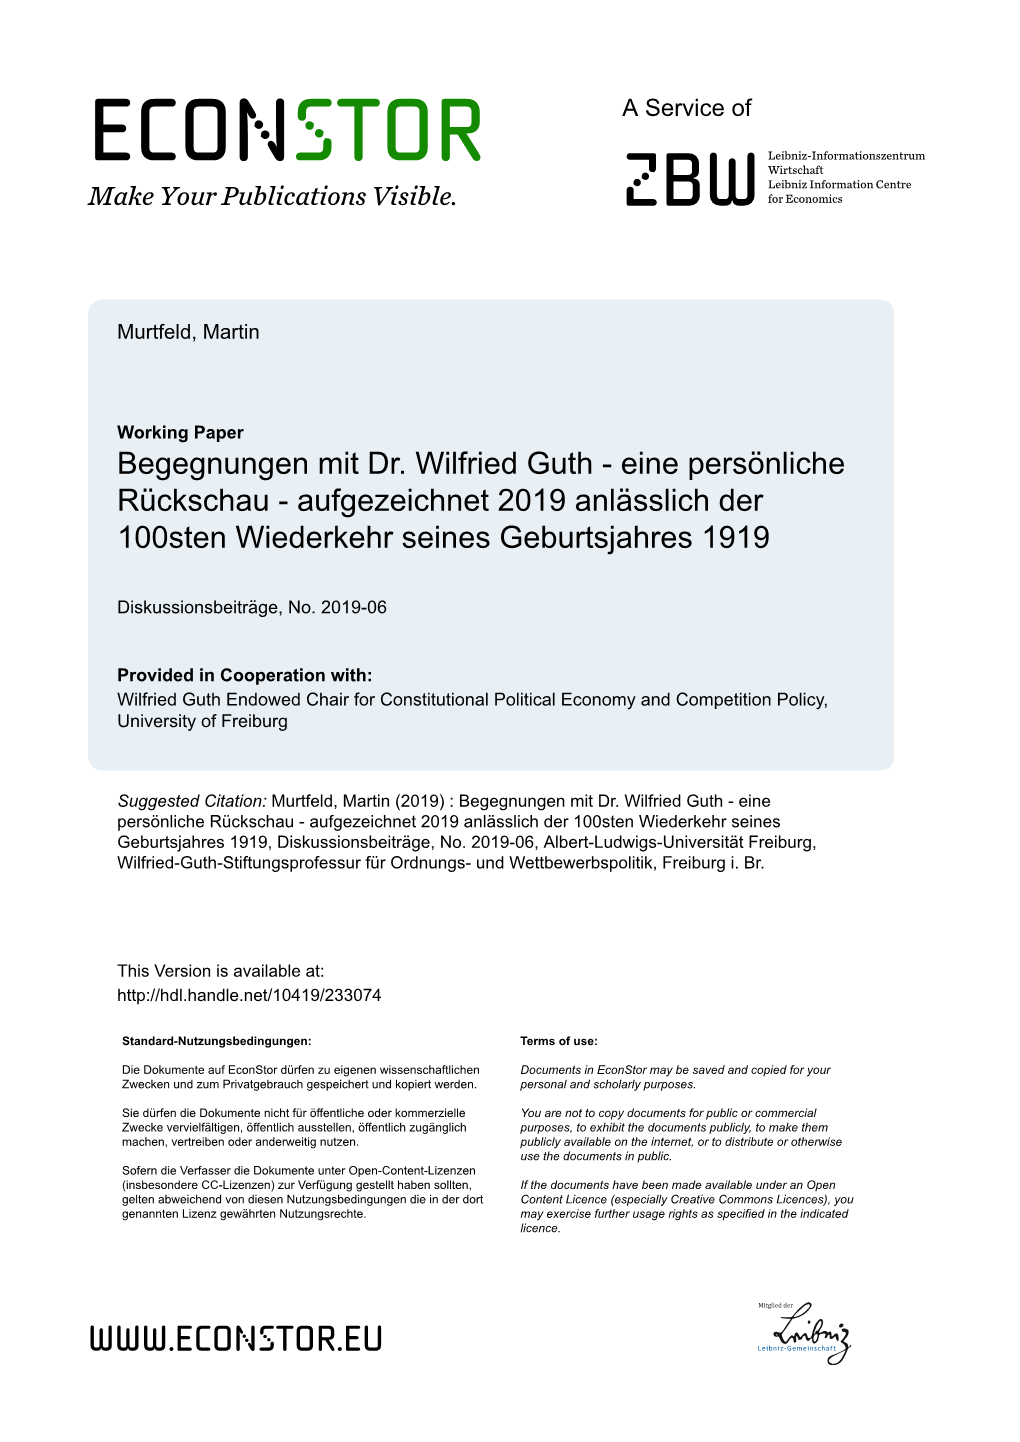 Wilfried-Guth-Stiftungsprofessur Für Ordnungs- Und Wettbewerbspolitik, Freiburg I